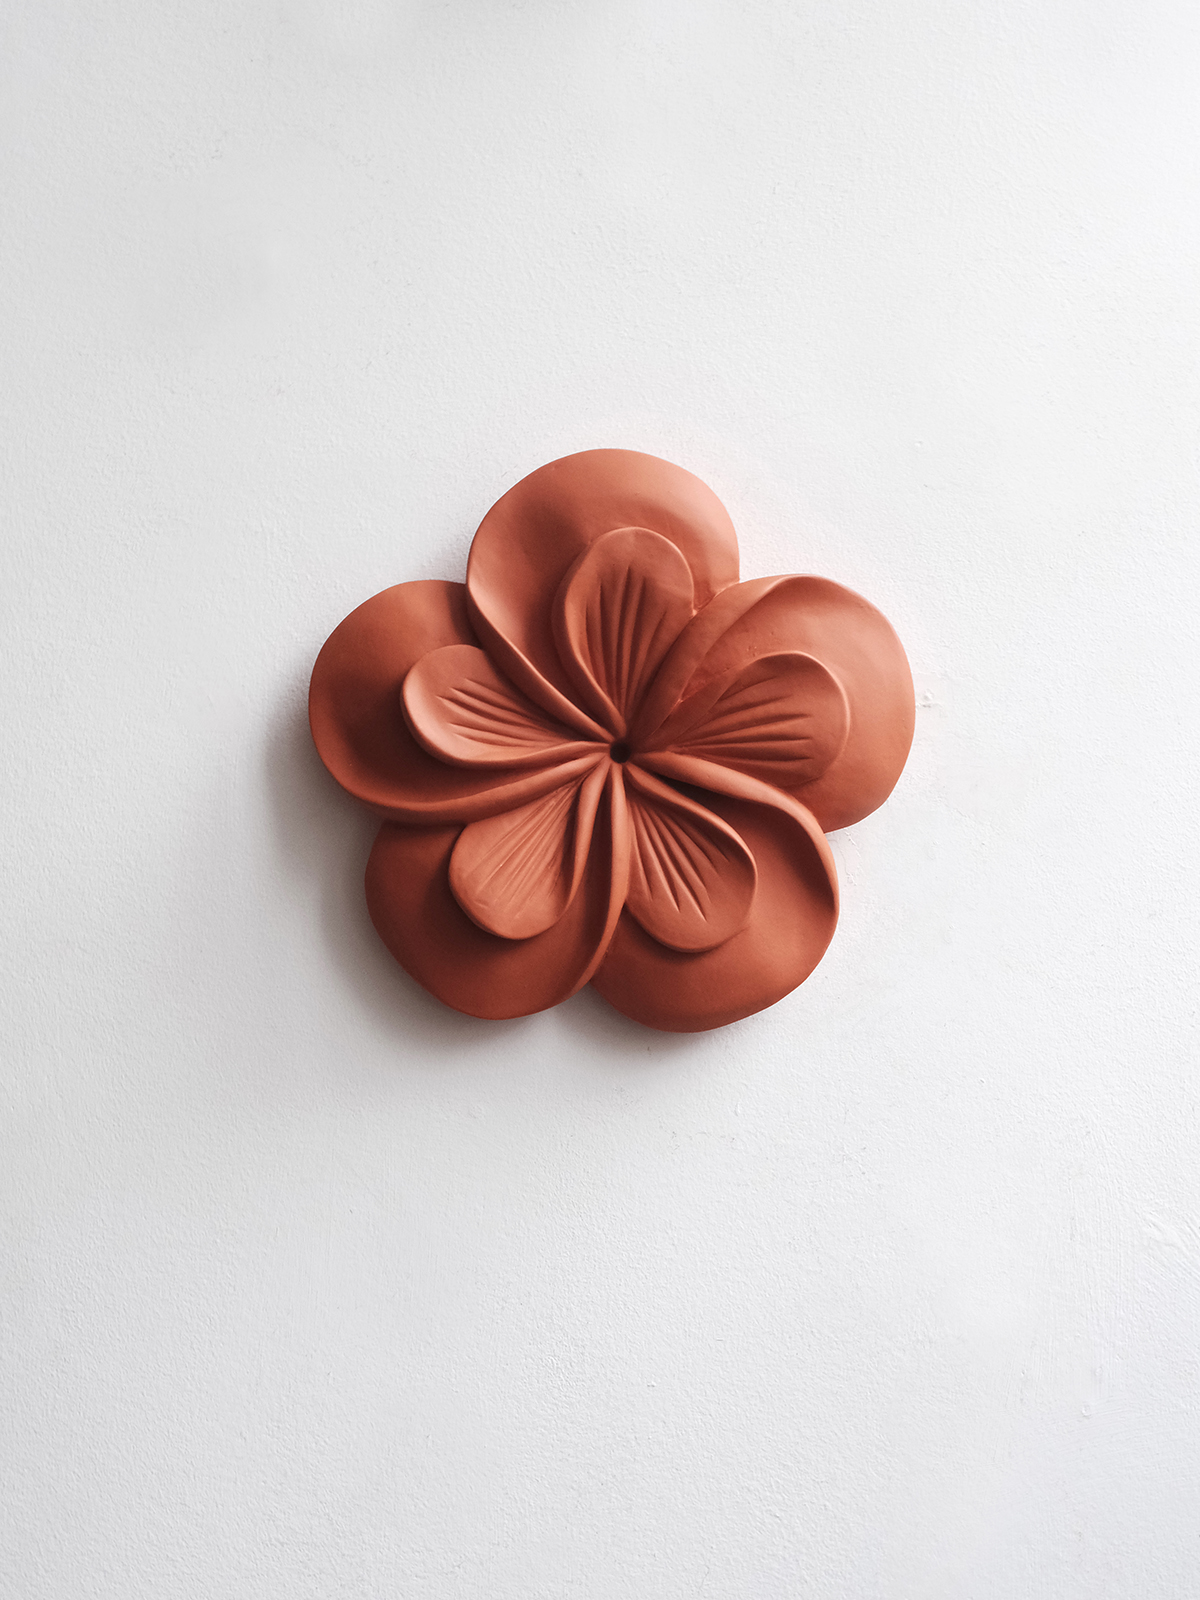 Iva Viana Violet Flower - Orange Plaster Sculpture Decor